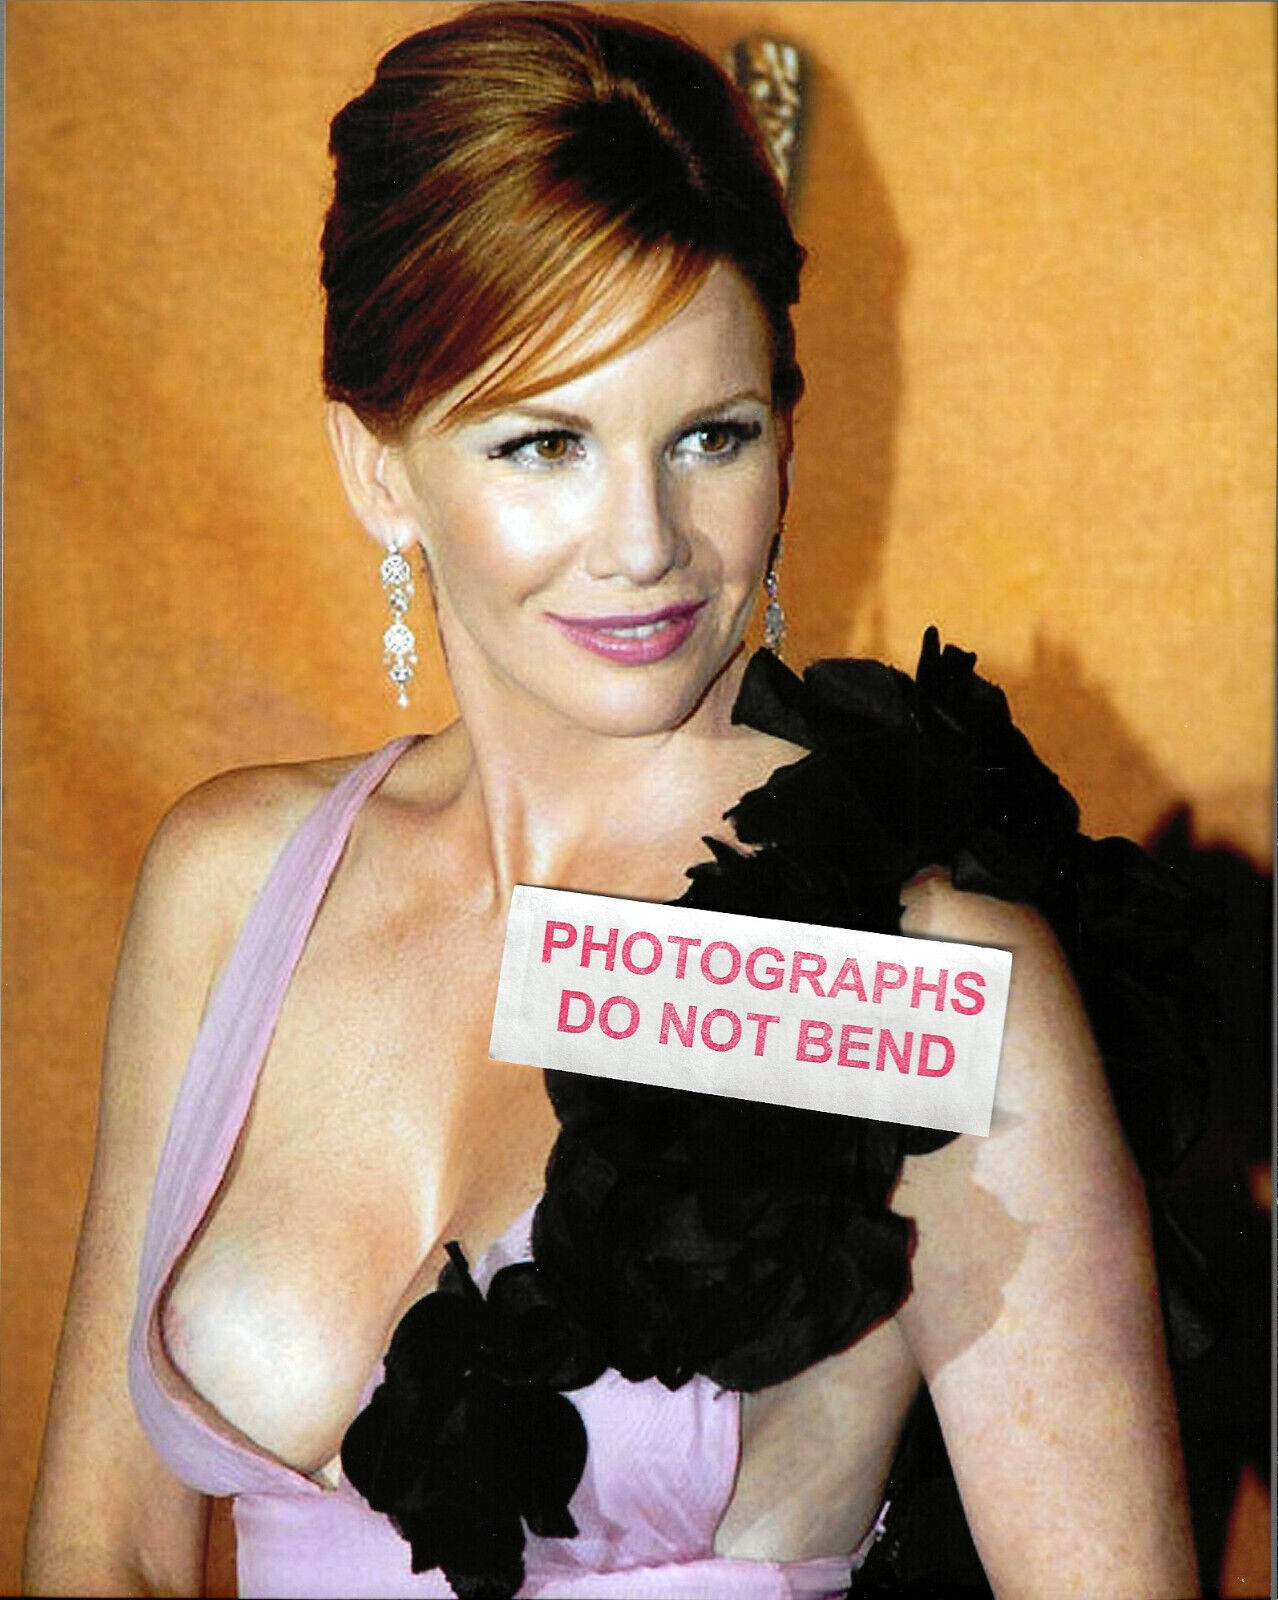 8x10 photo Melissa Gilbert prett sexy Little House TV star at an awards event